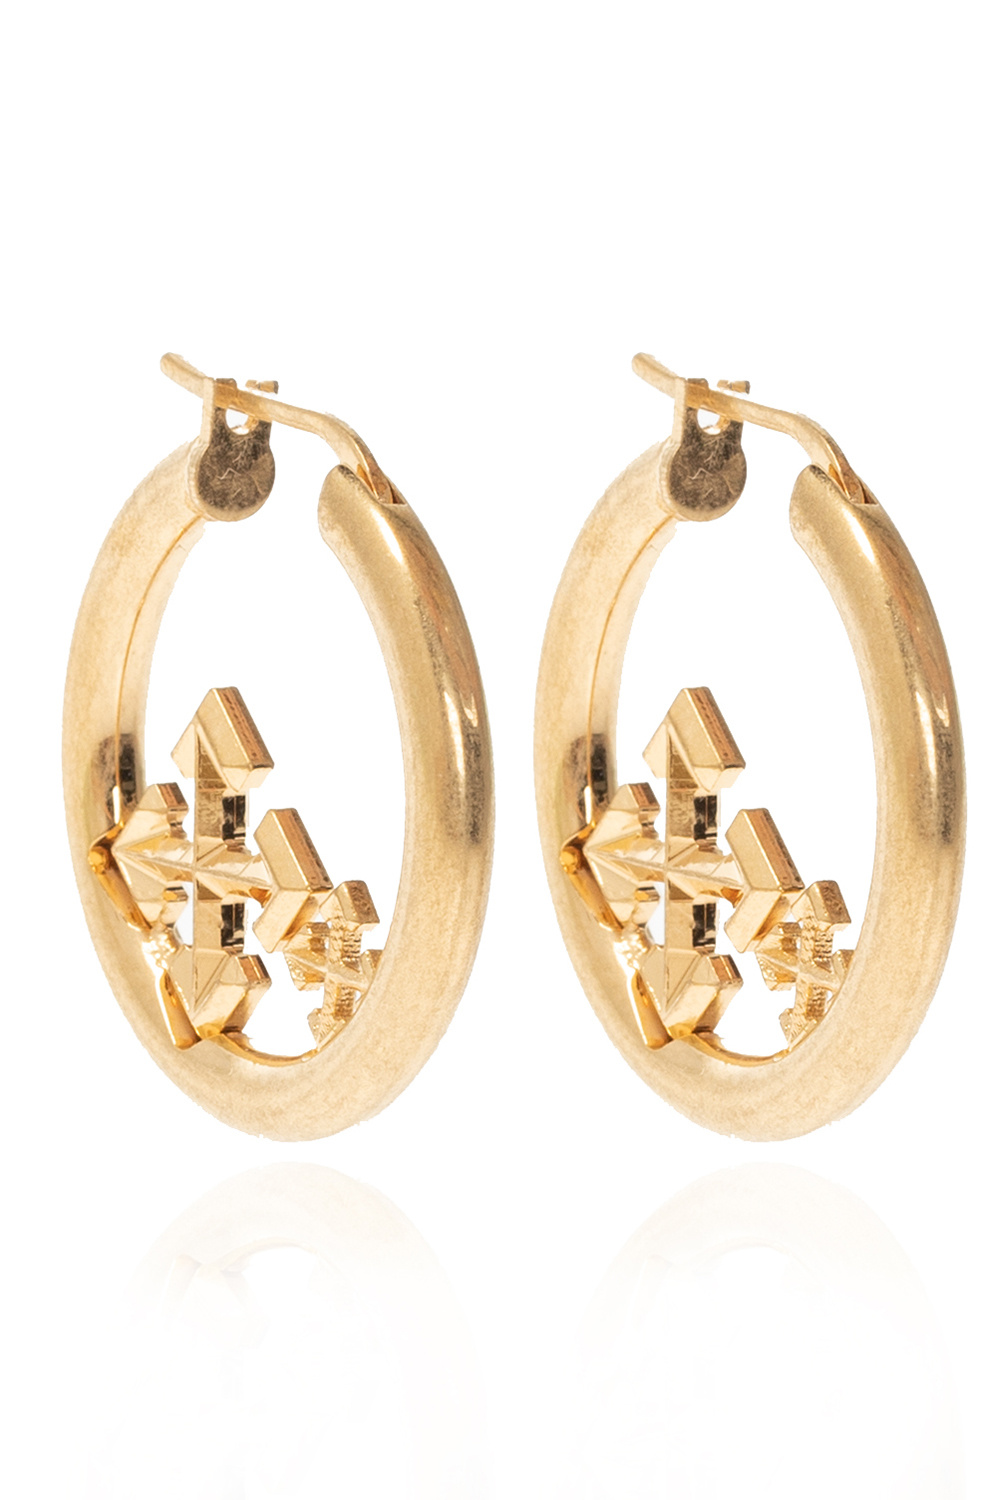 Off-White Brass earrings